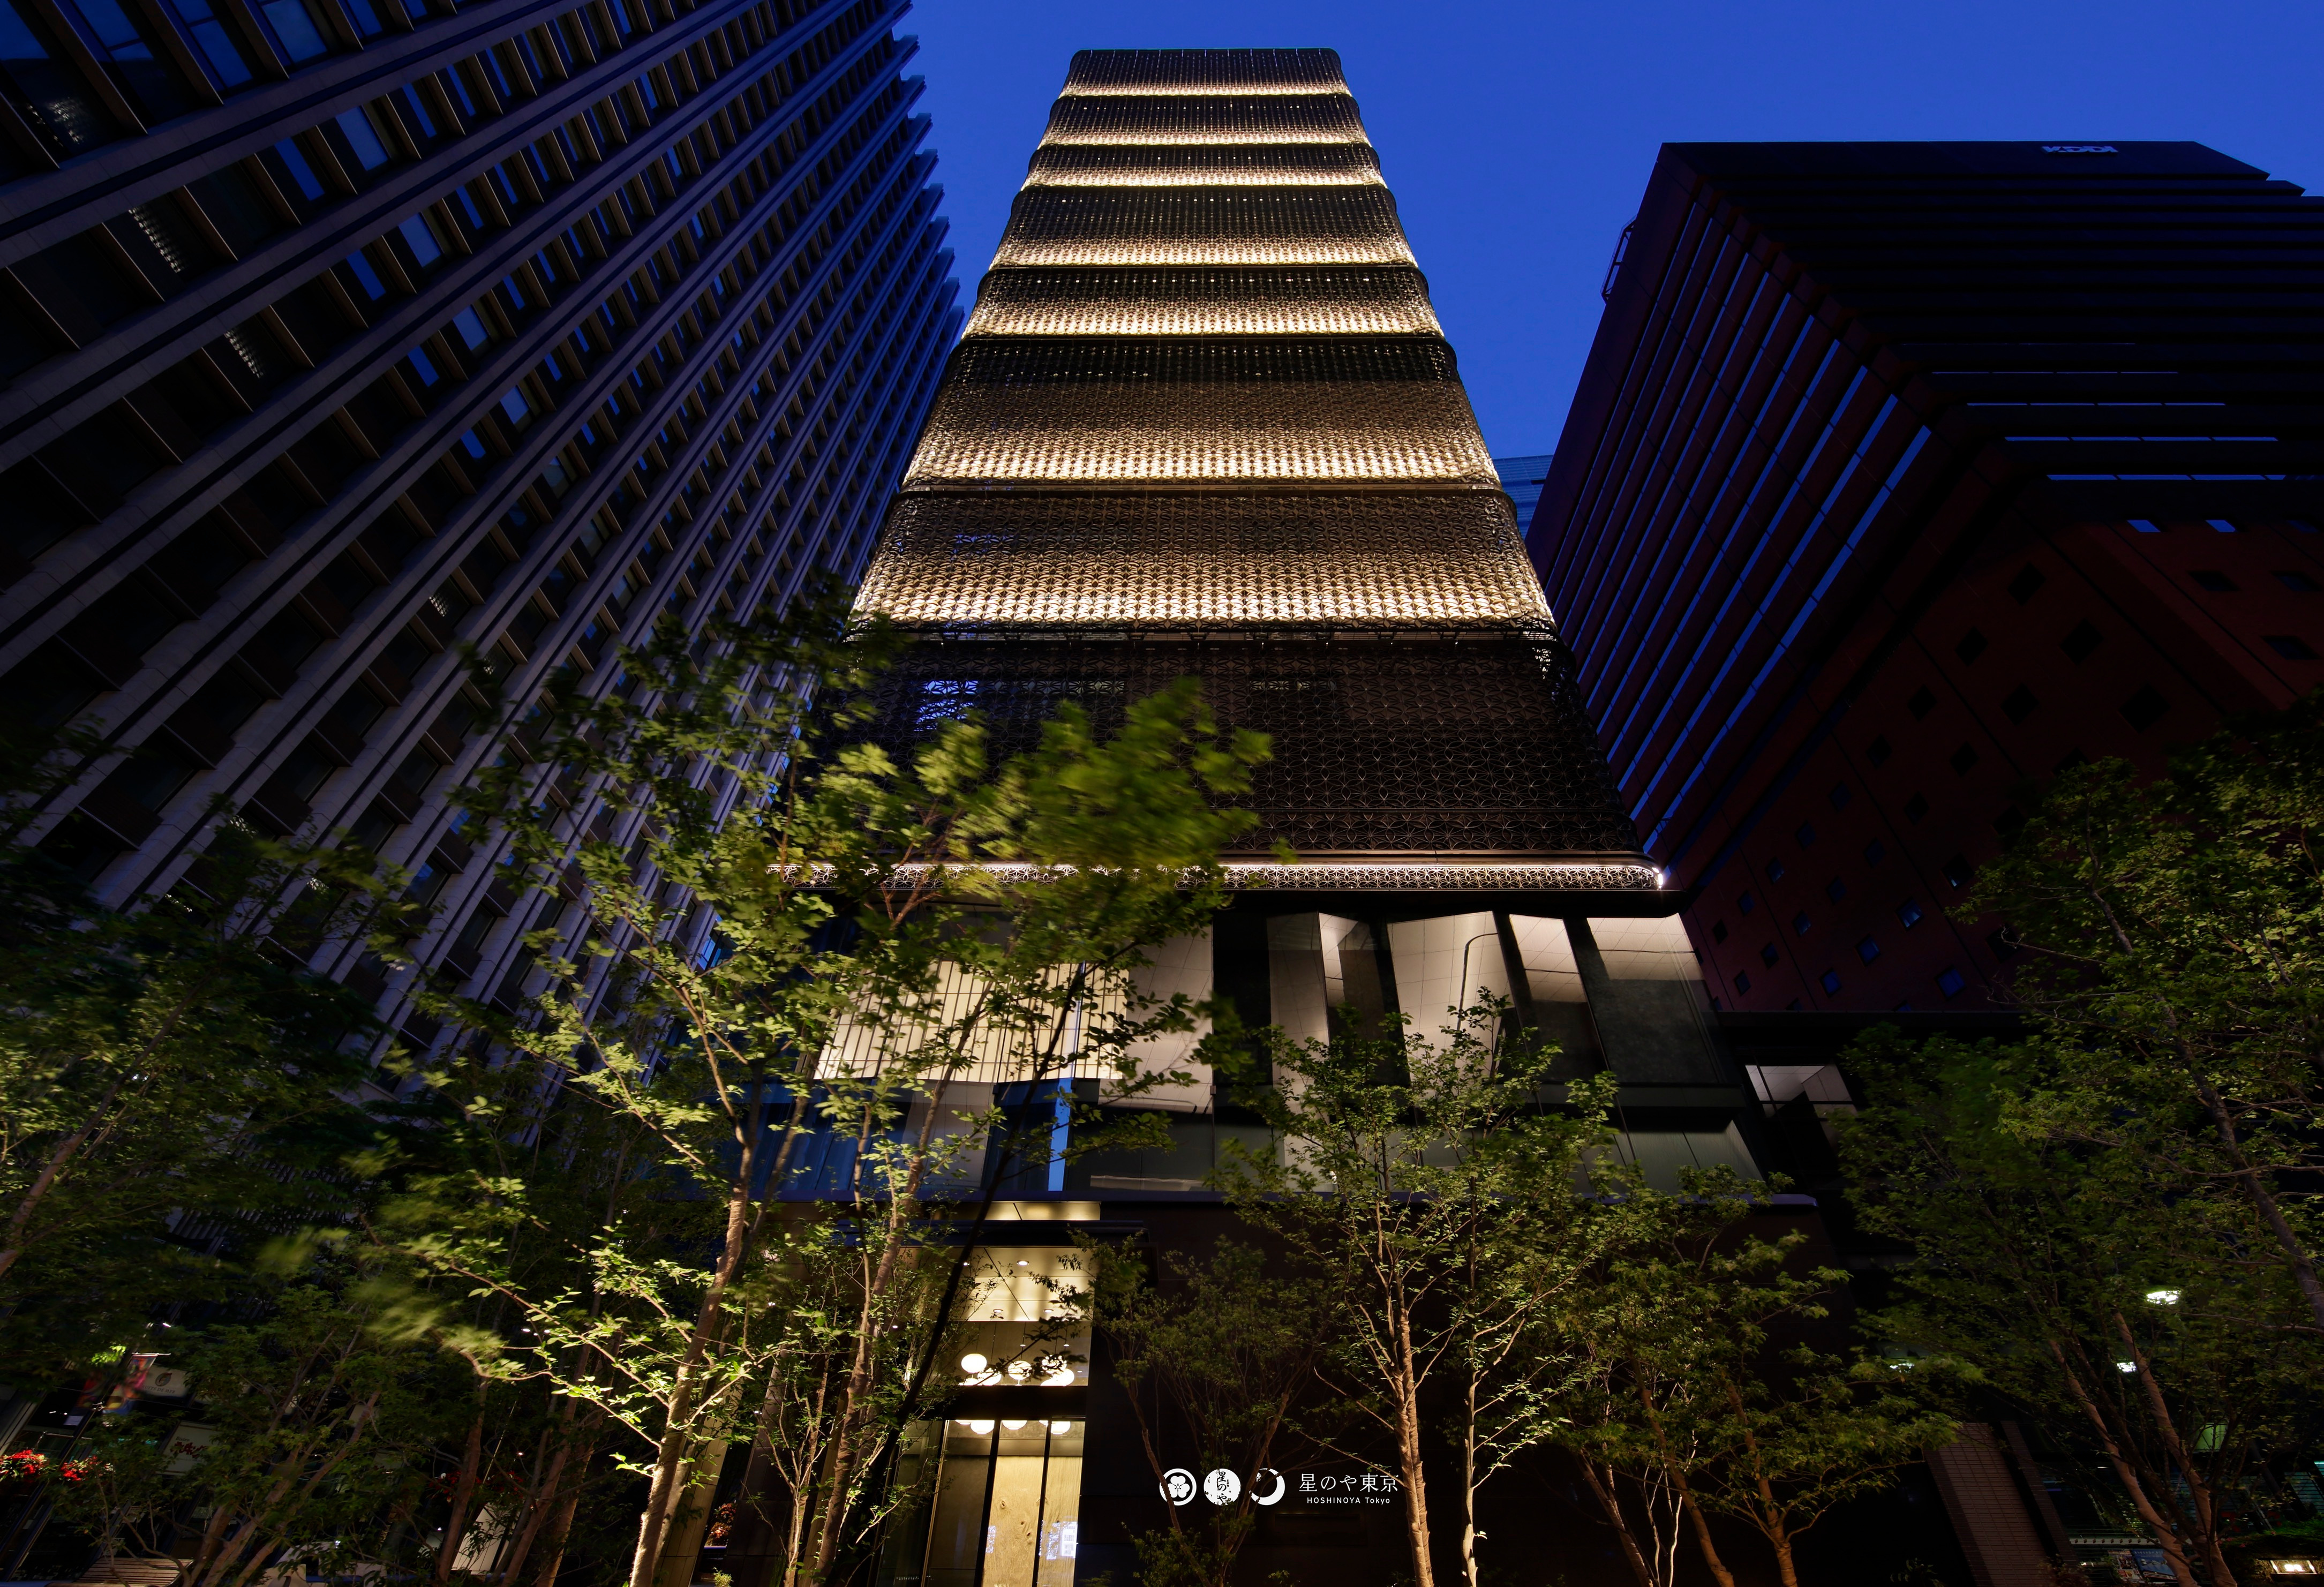 由星野集團打造的東京首家奢華日式旅館虹夕諾雅東京於16年7月開幕 Business Wire